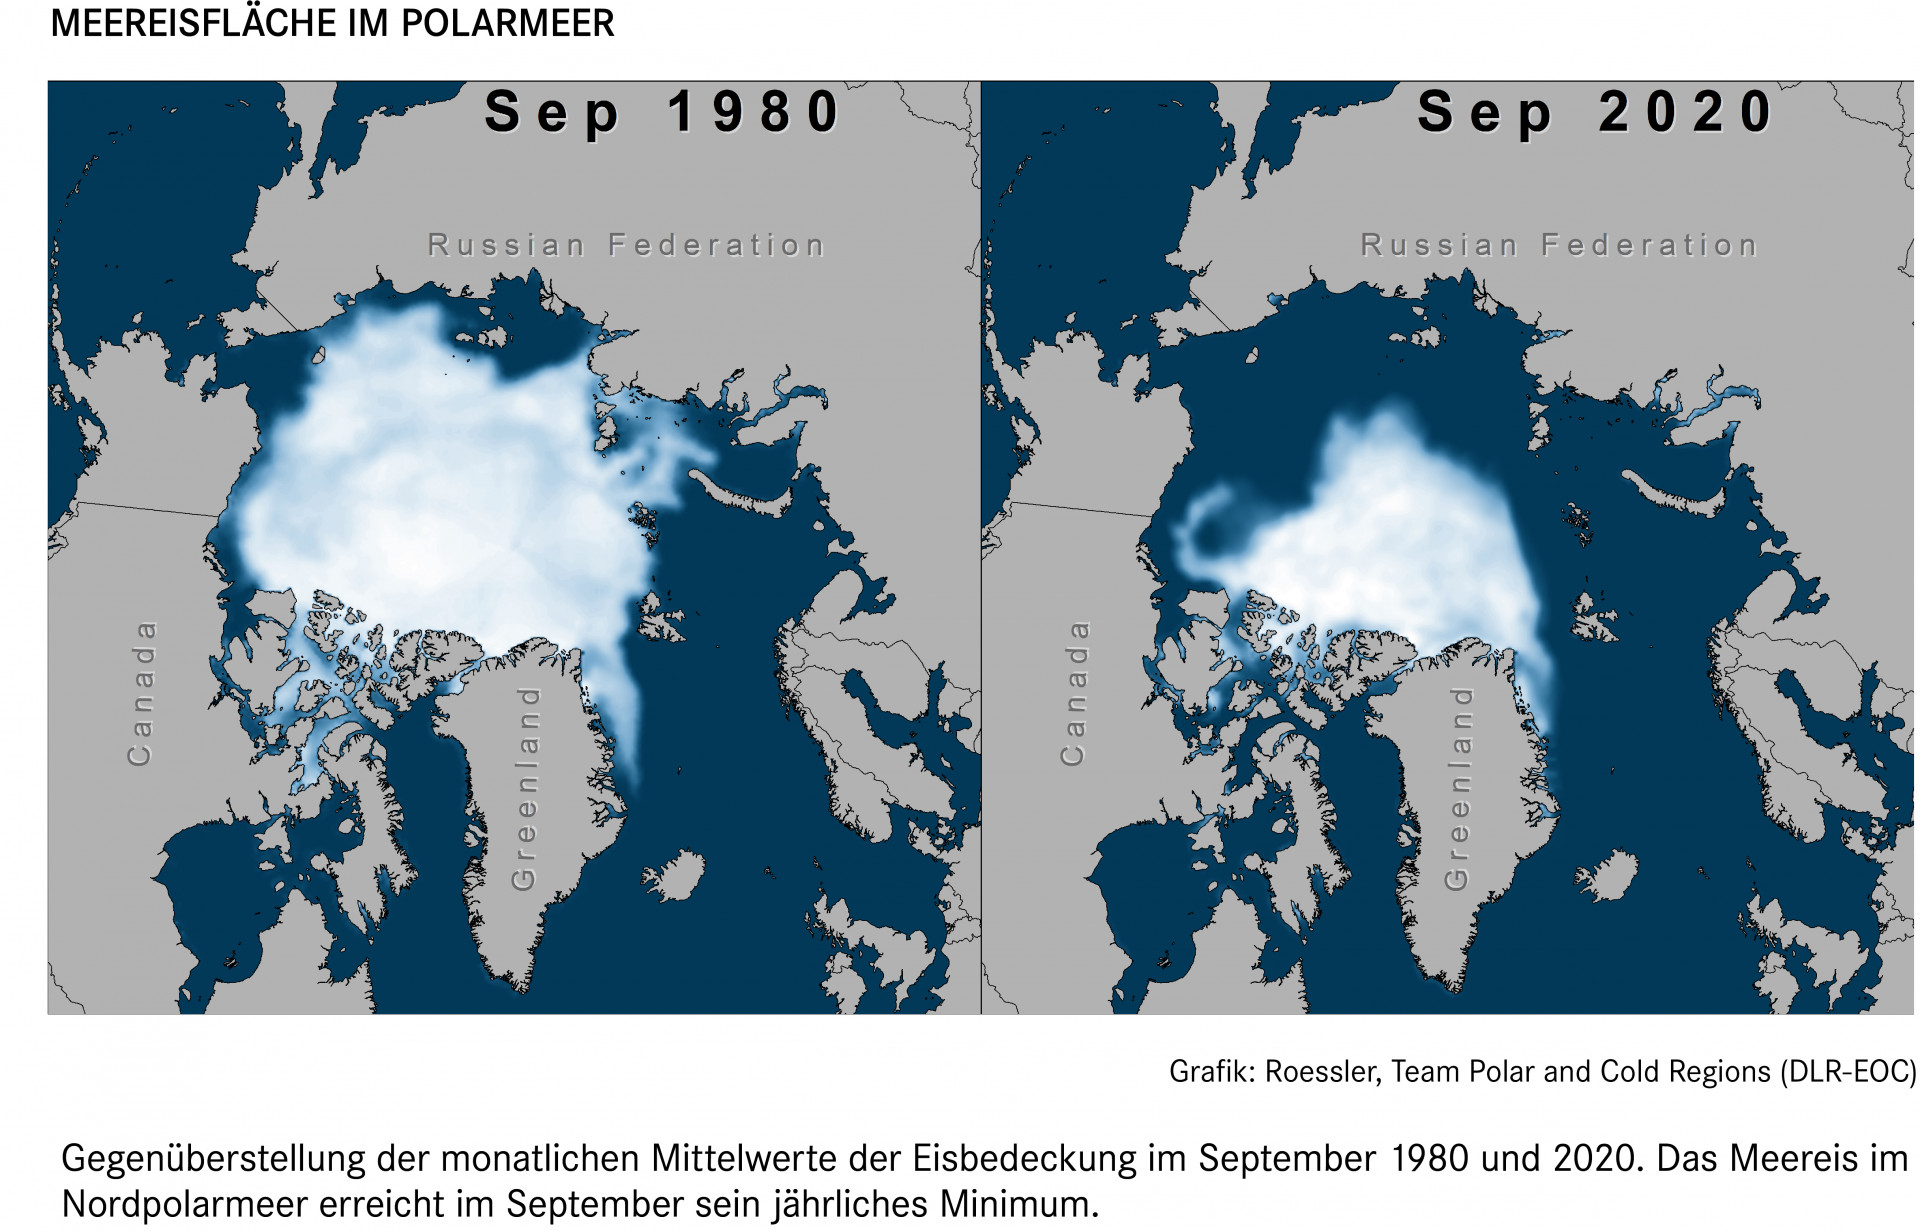 Zwei Satellitenbilder nebeneinander zeigen die Meereisausdehnung am Nordpol im September 1980 und 2020. Die Fläche 2020 ist nur noch etwa halb so groß wie 1980